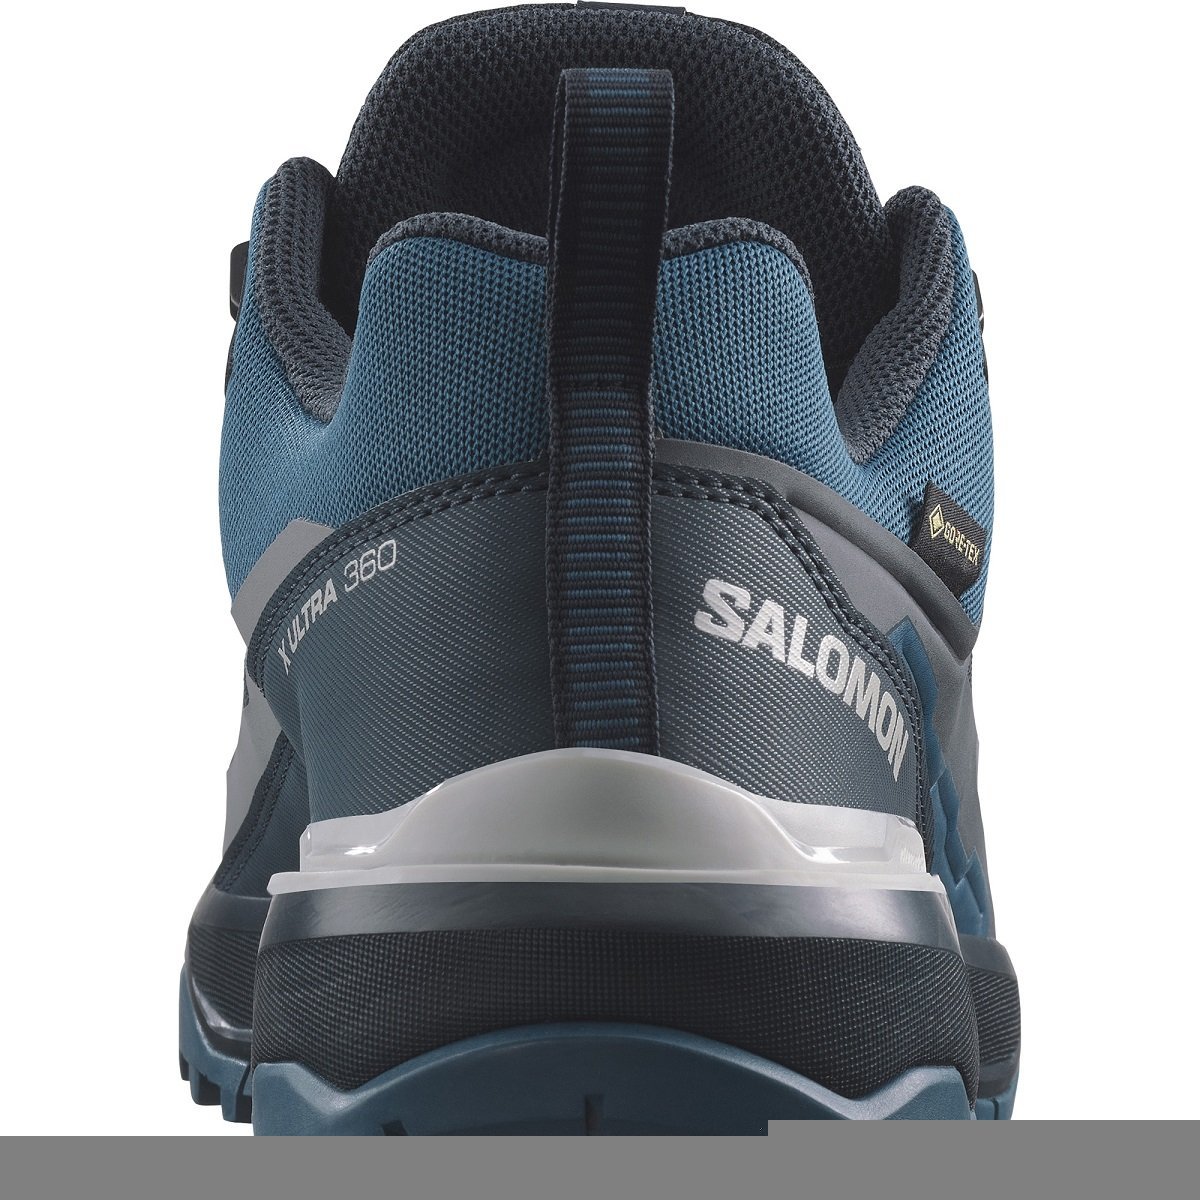 Obuv Salomon X Ultra 360 GTX M - modrá/čierna